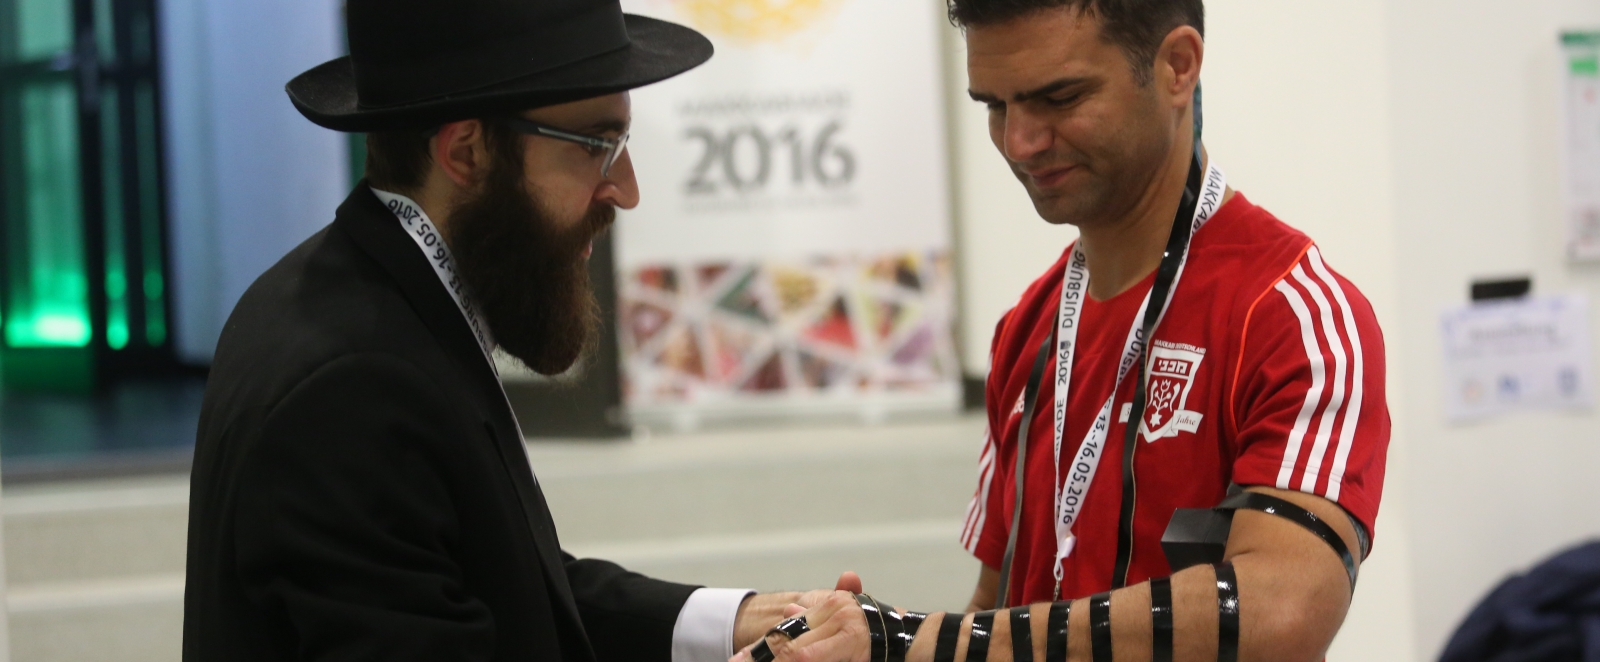 Ein Rabbiner mit einem Athleten im roten Trikot im Gespräch.